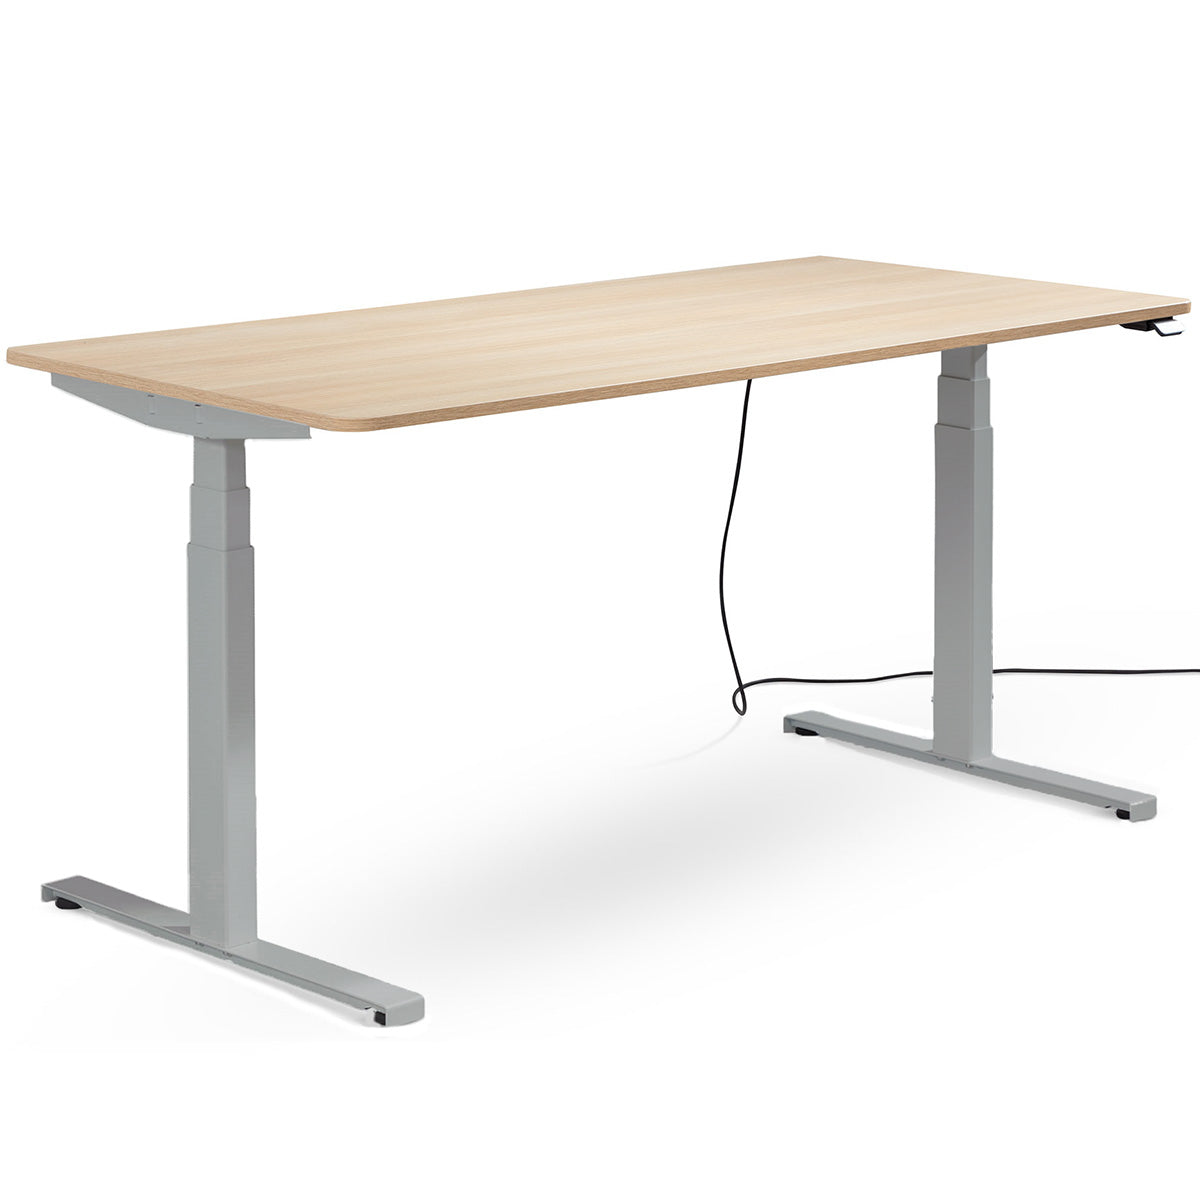 EasyT 140cm - höhenverstellbarer Schreibtisch